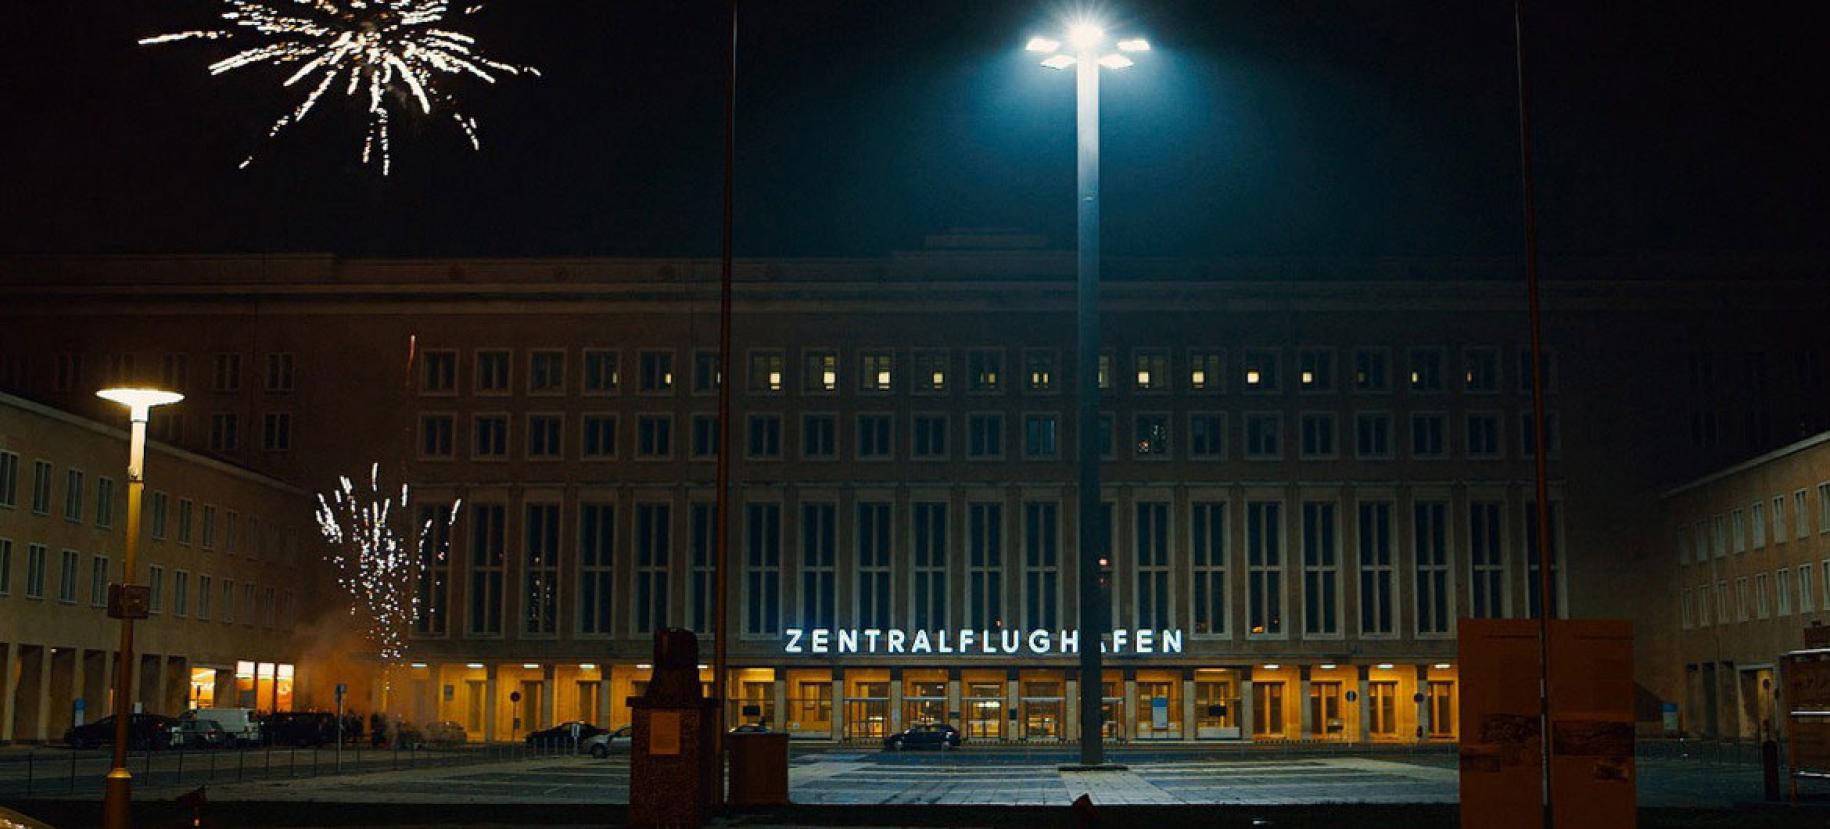 Entrance of Airport Tempelholf in Berlin.